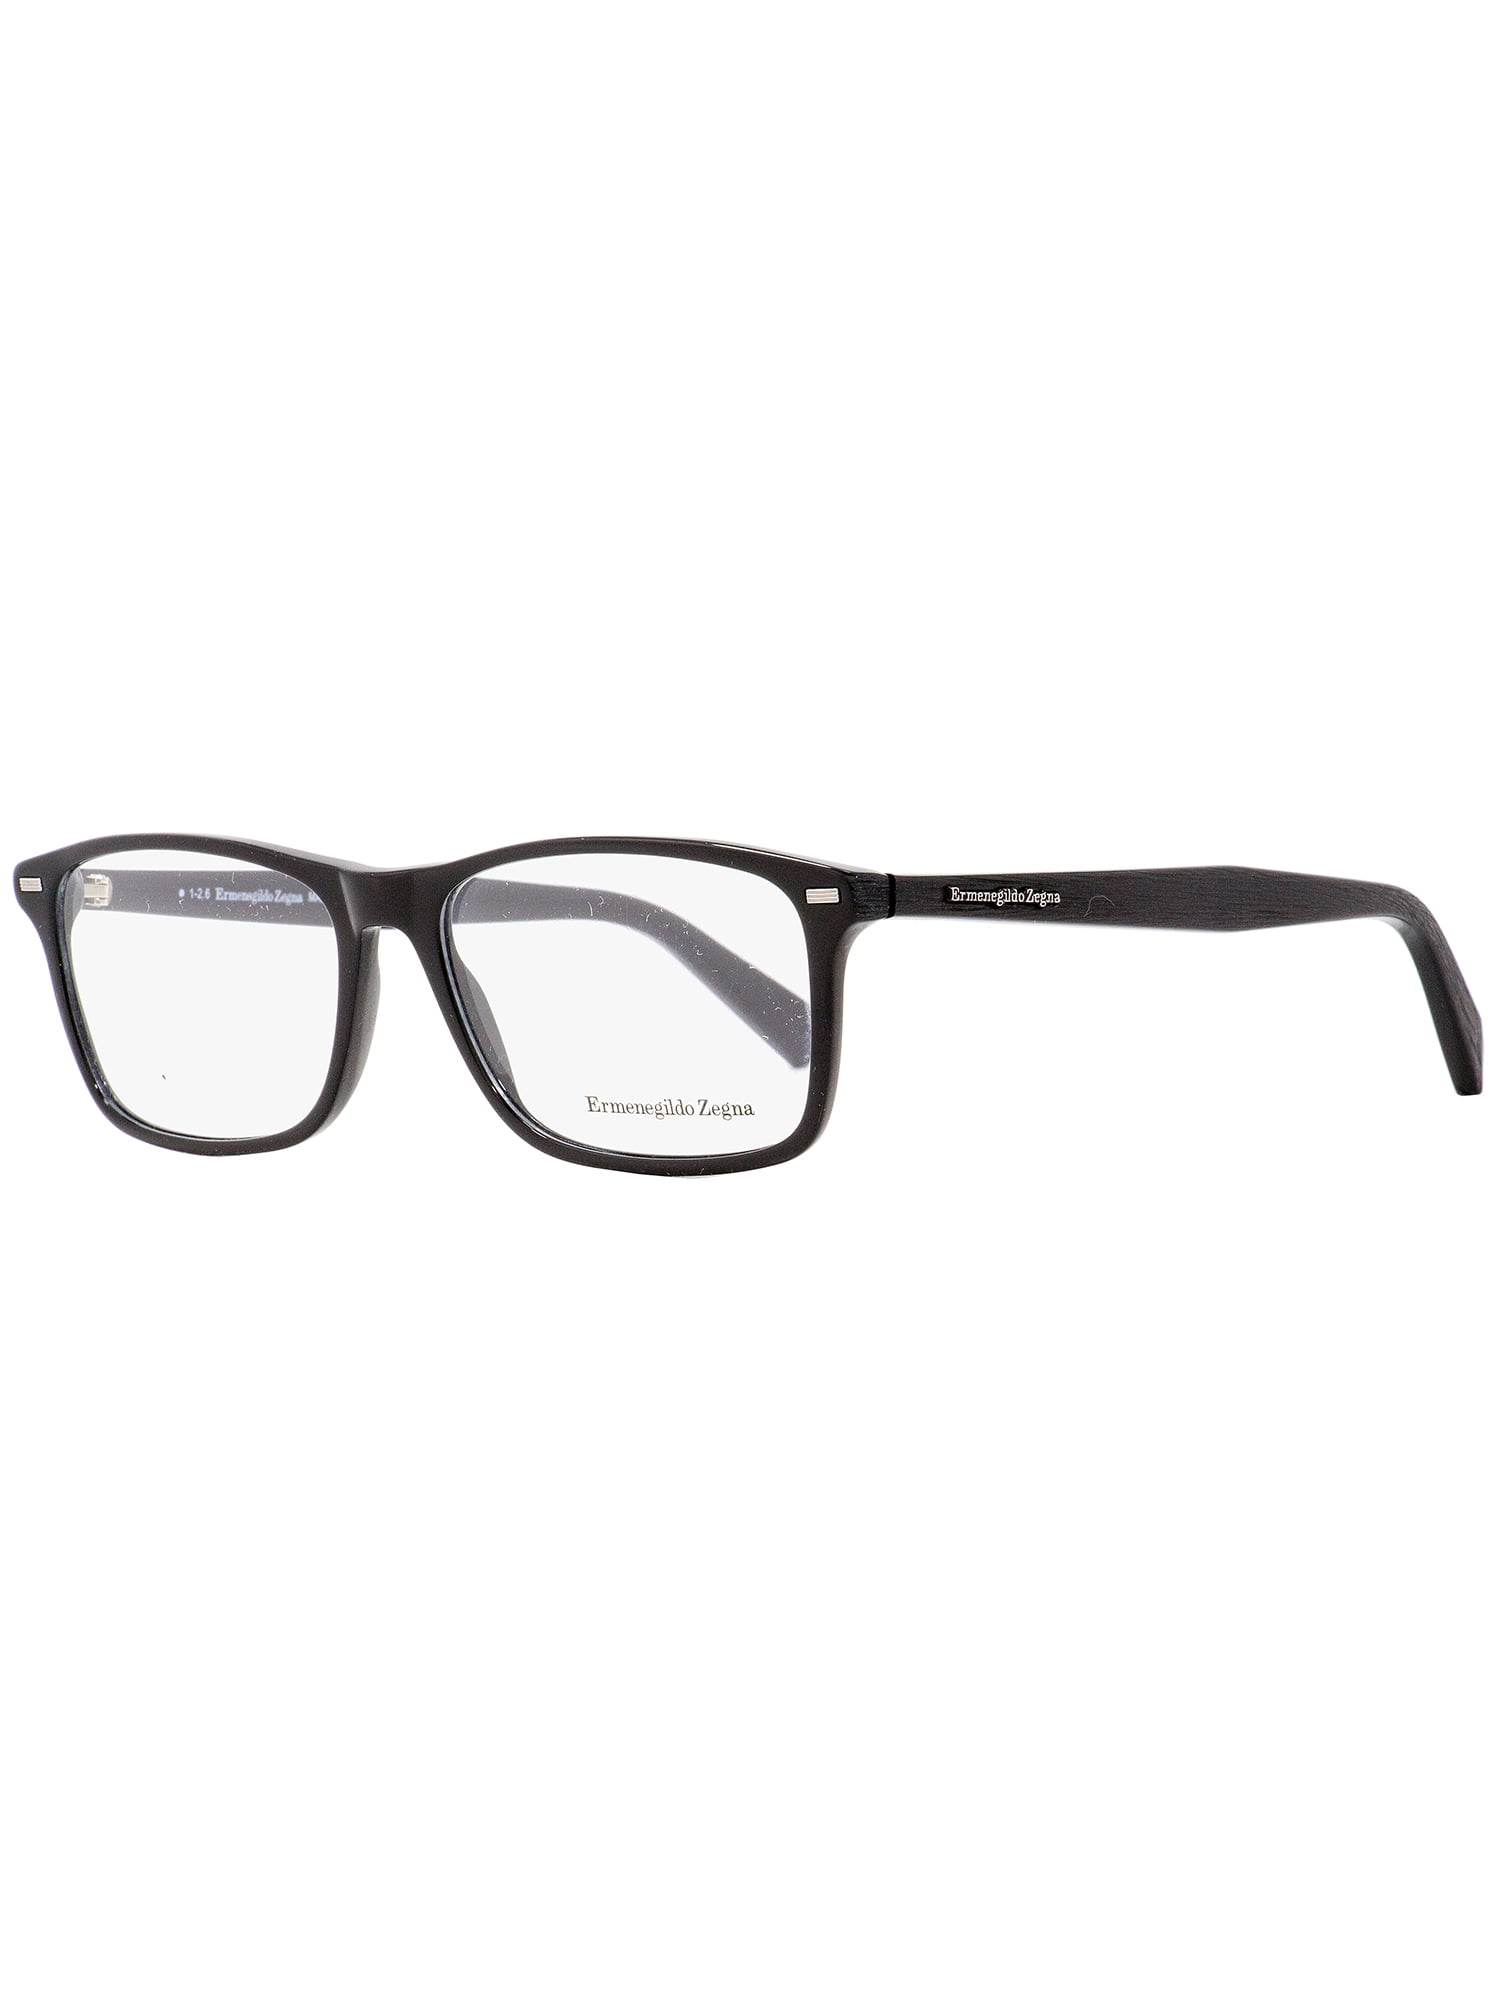 Ermenegildo Zegna Rectangular Eyeglasses EZ5069 001 Black 55mm 5069 ...